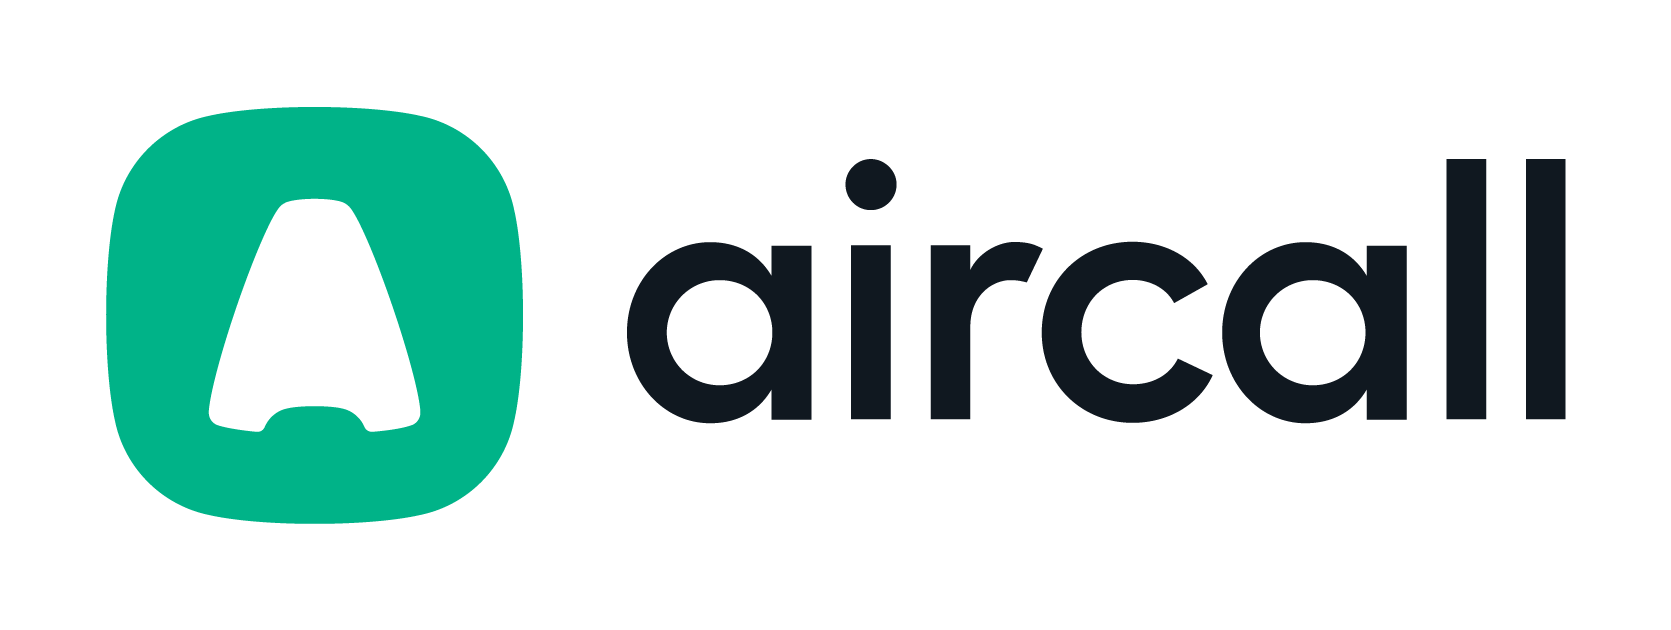 aircall_logo_default_rgb-May-07-2021-05-33-43-13-PM